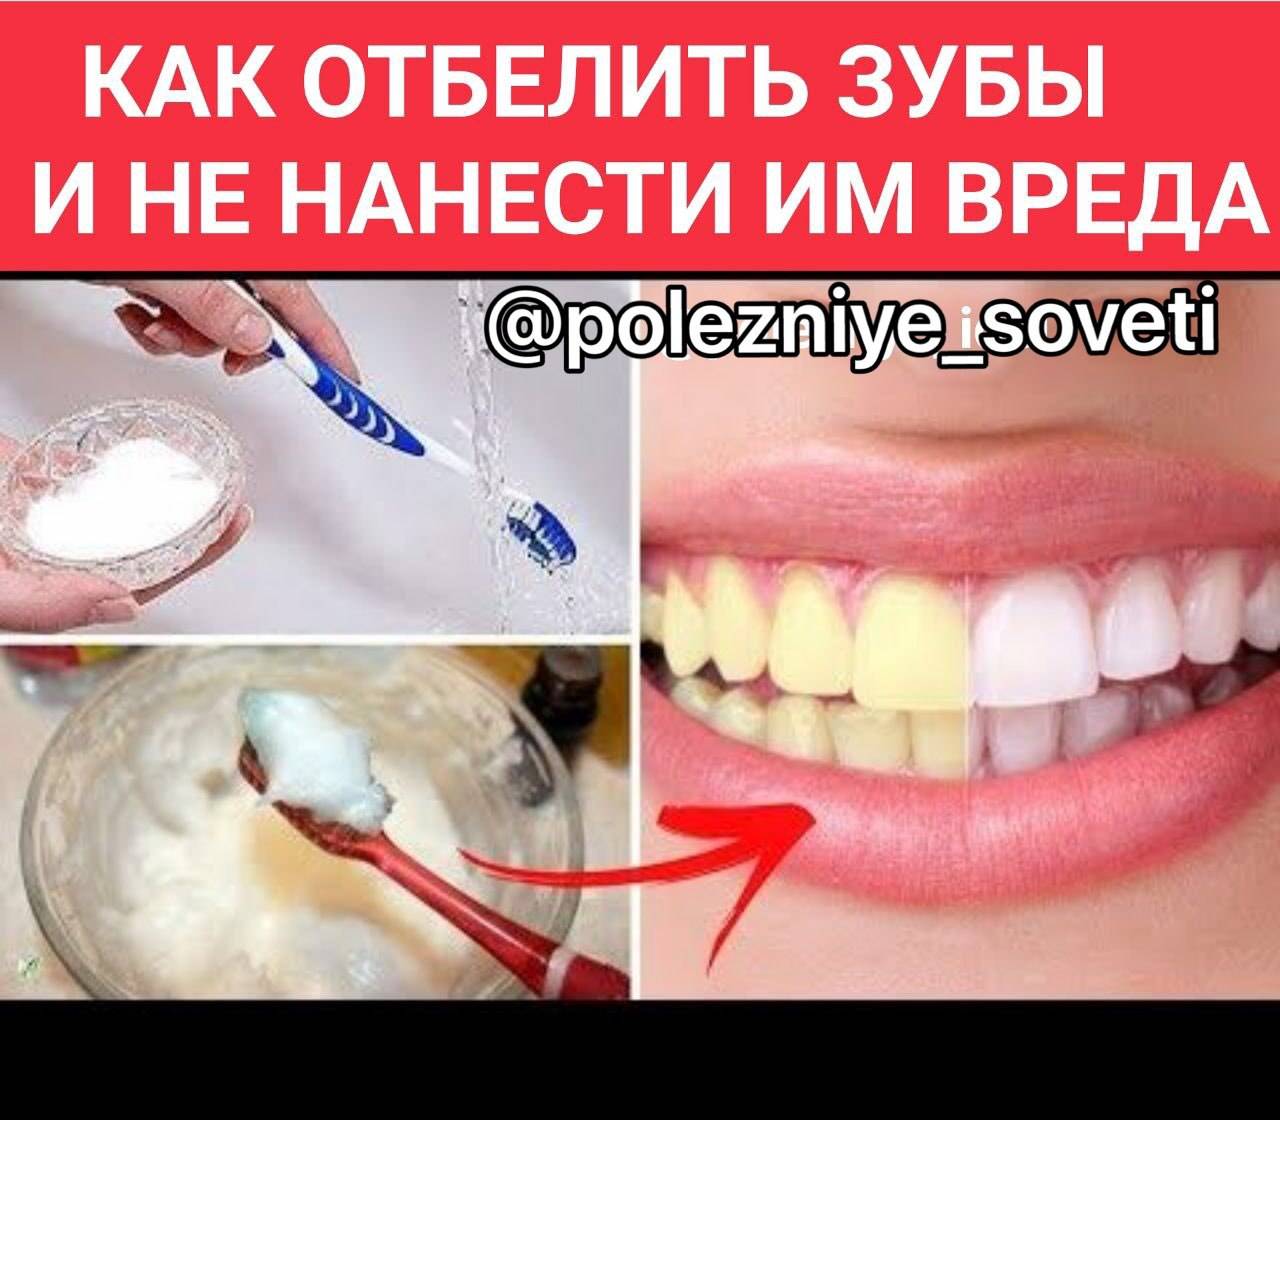 Рецепт отбеливания зубов. Как отбелить зубы в домашних условиях. Отбелить зубы без вреда. Отбелить зубы в домашних условиях без вреда для эмали быстро. Самостоятельное отбеливание зубов.